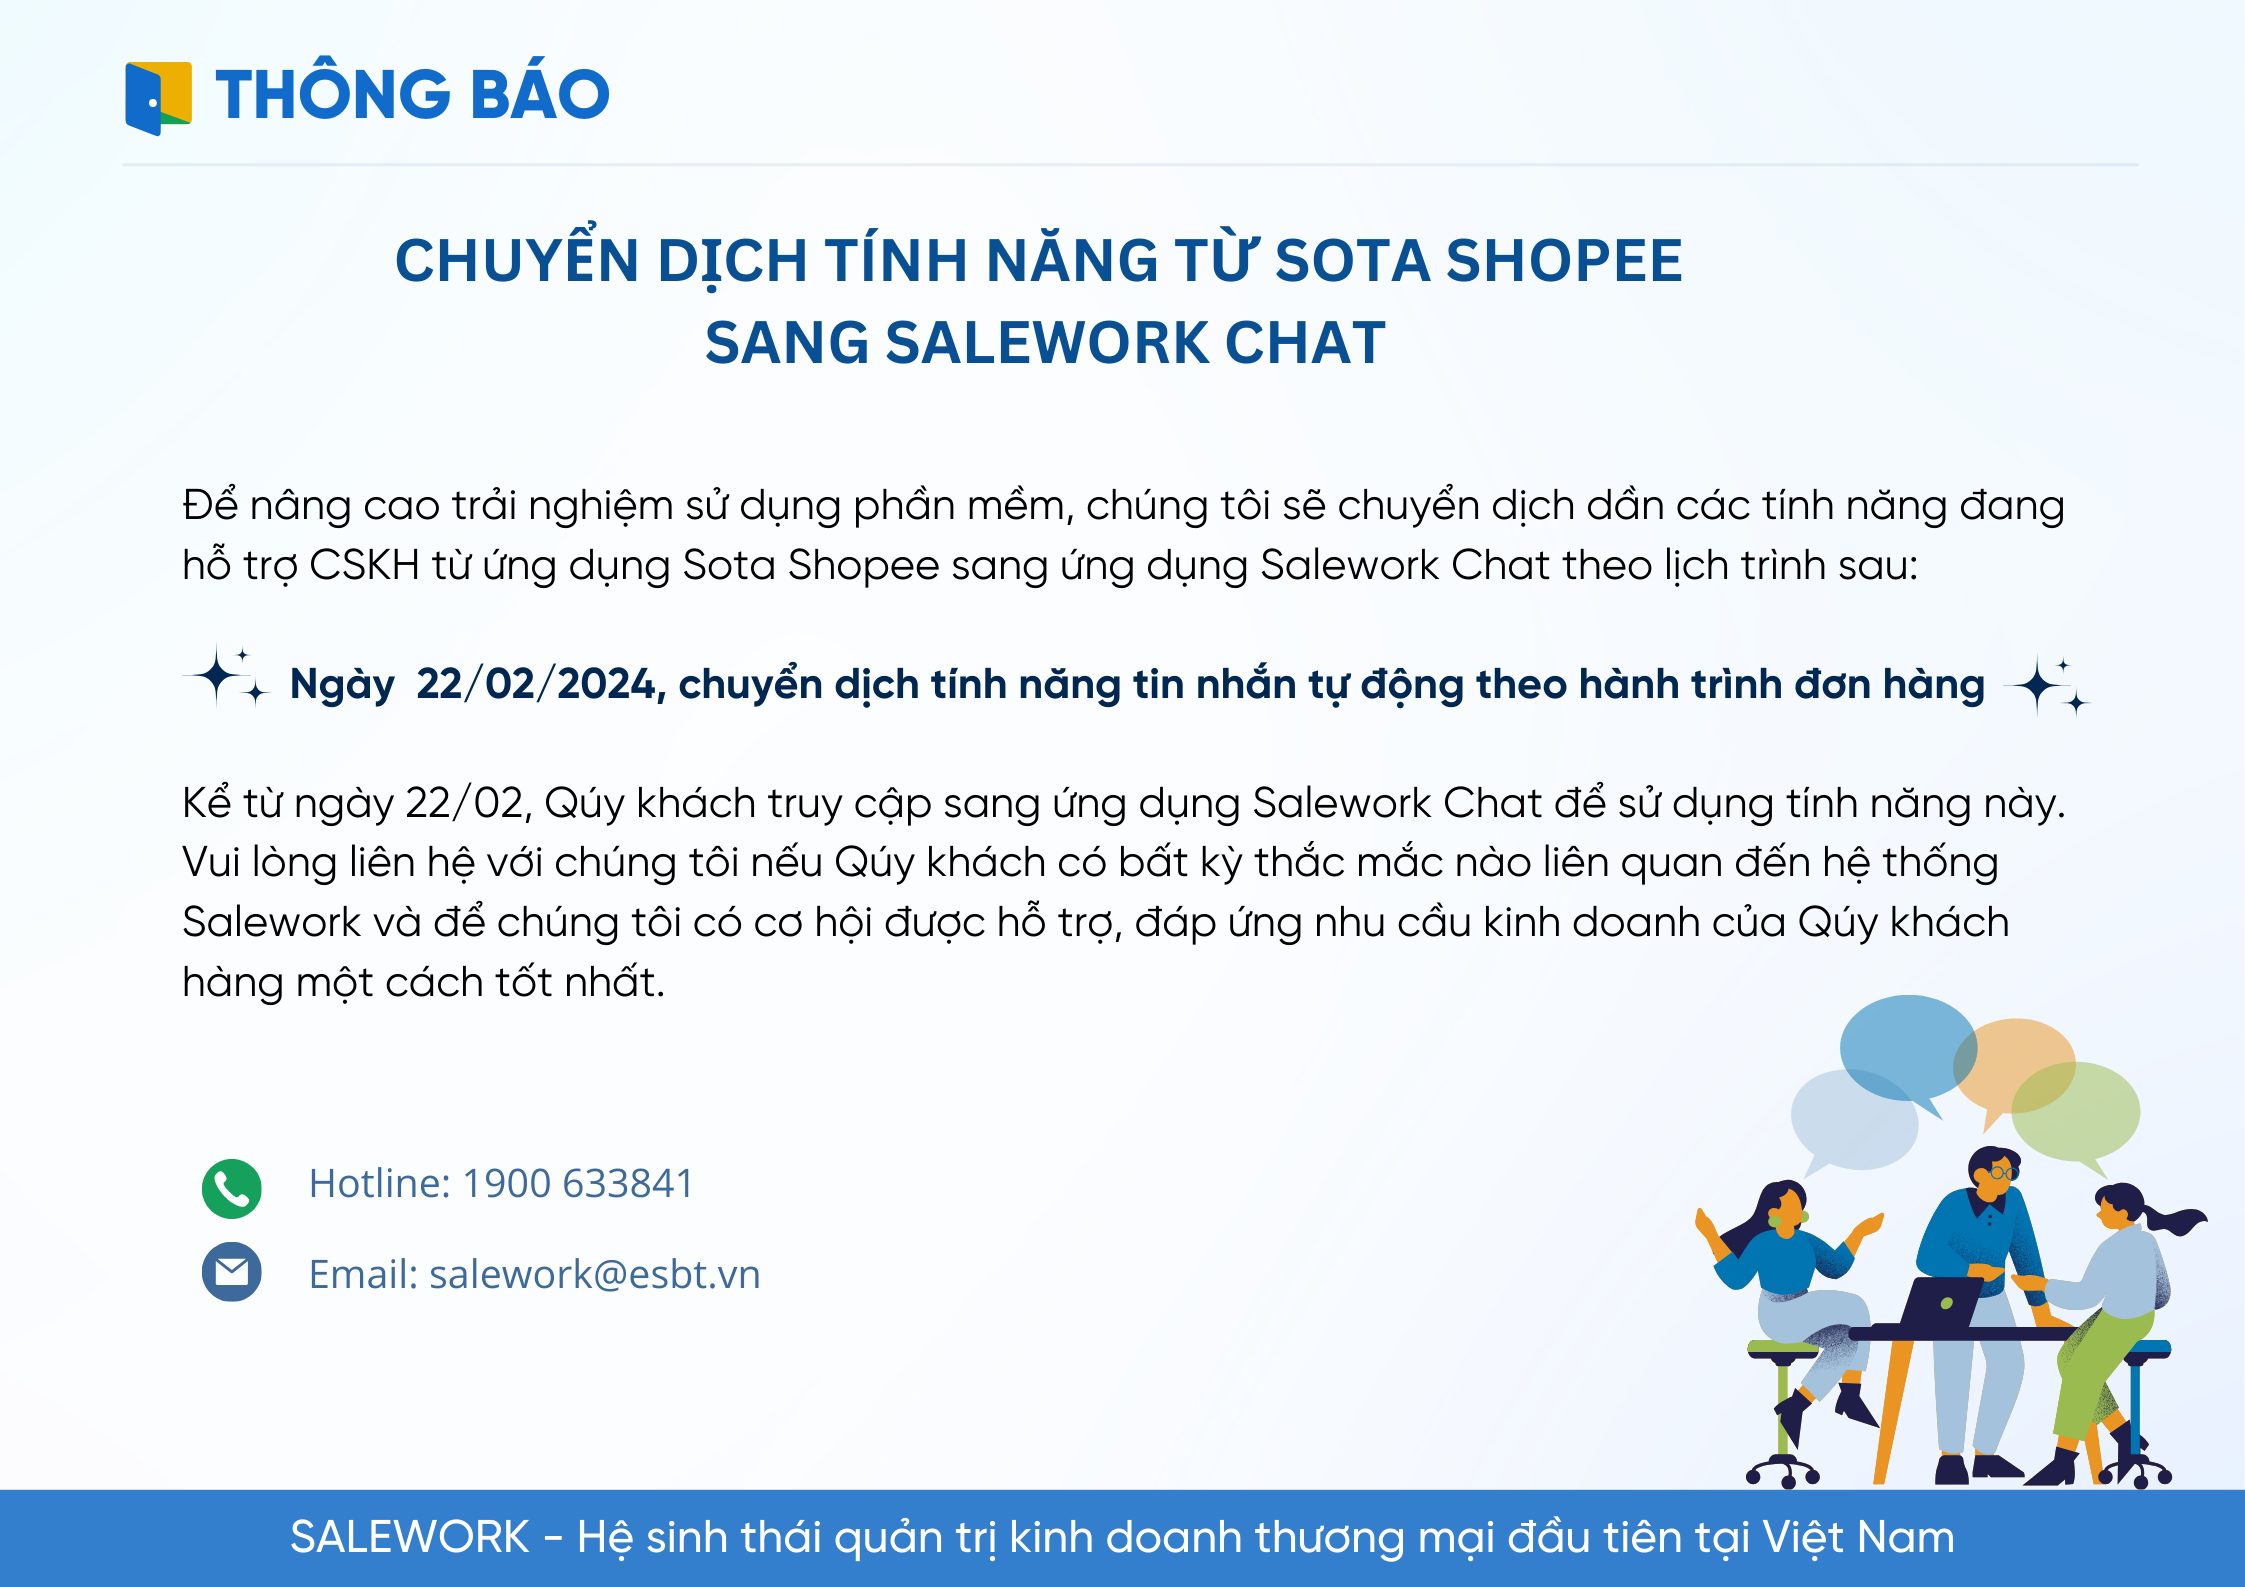 Chuyển dịch tính năng tin nhắn tự động cho sàn Shopee sang ứng dụng Salework Chat - 11